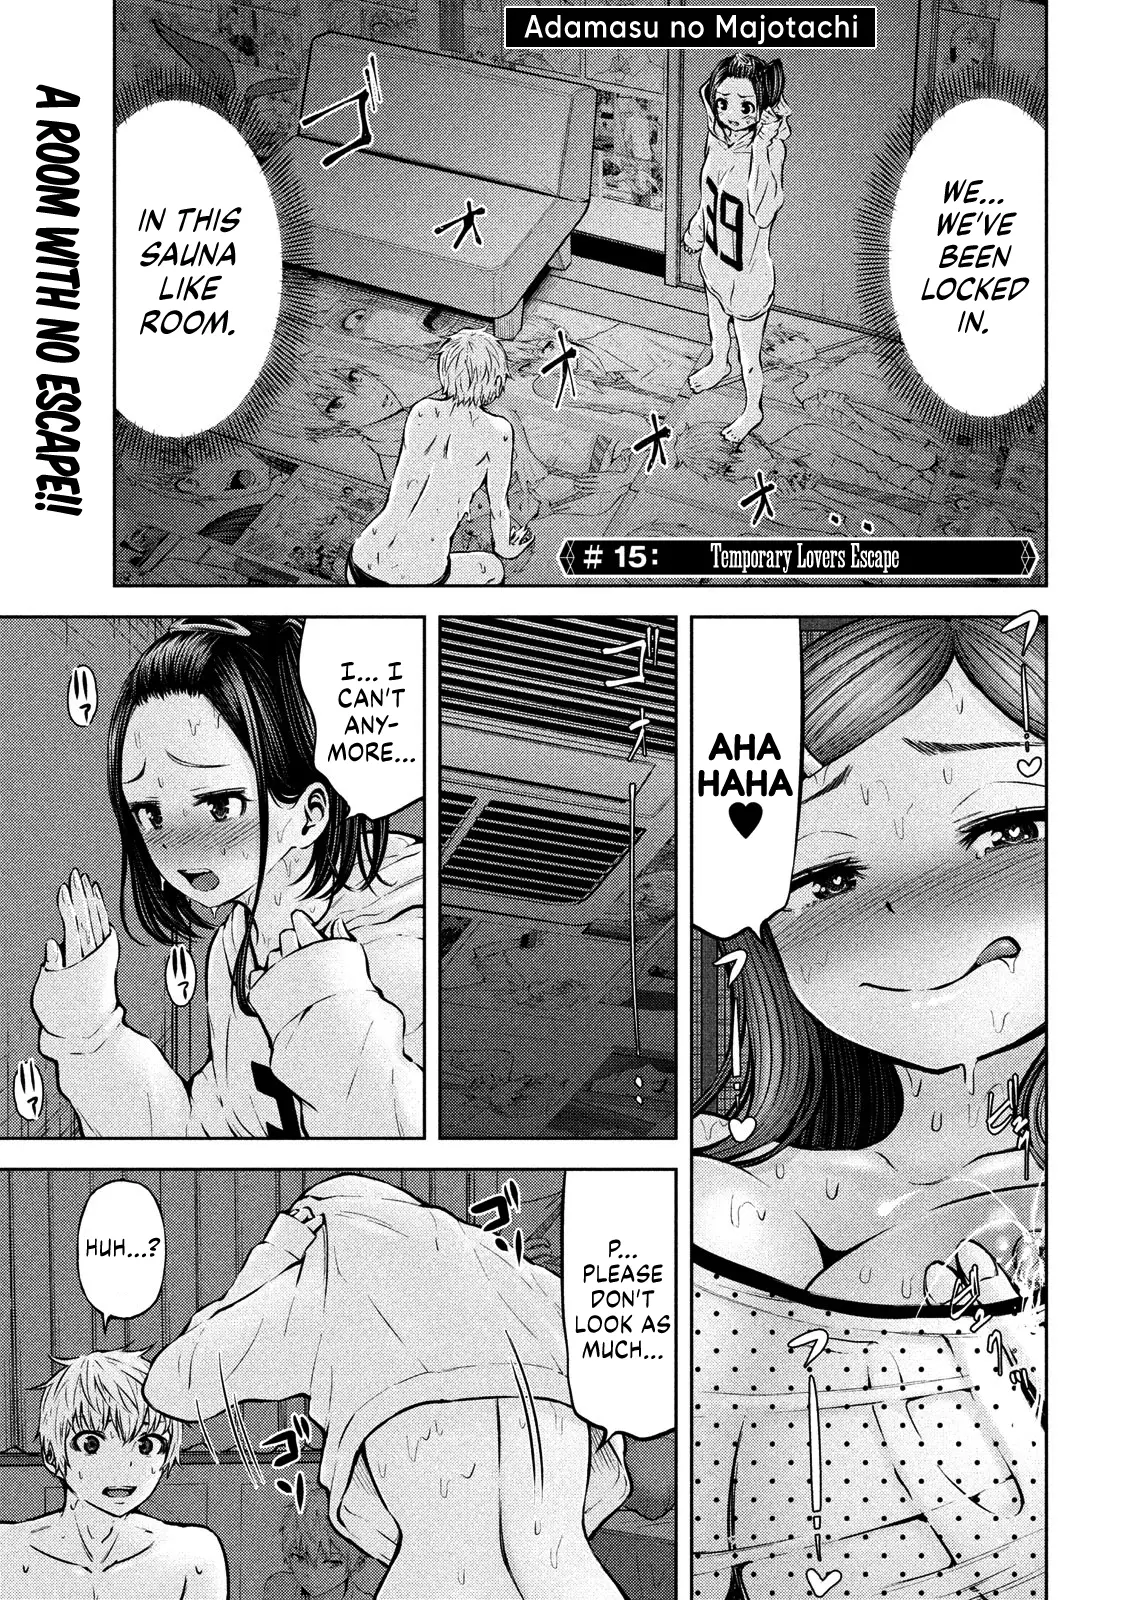 Adamasu No Majotachi - 15 page 2